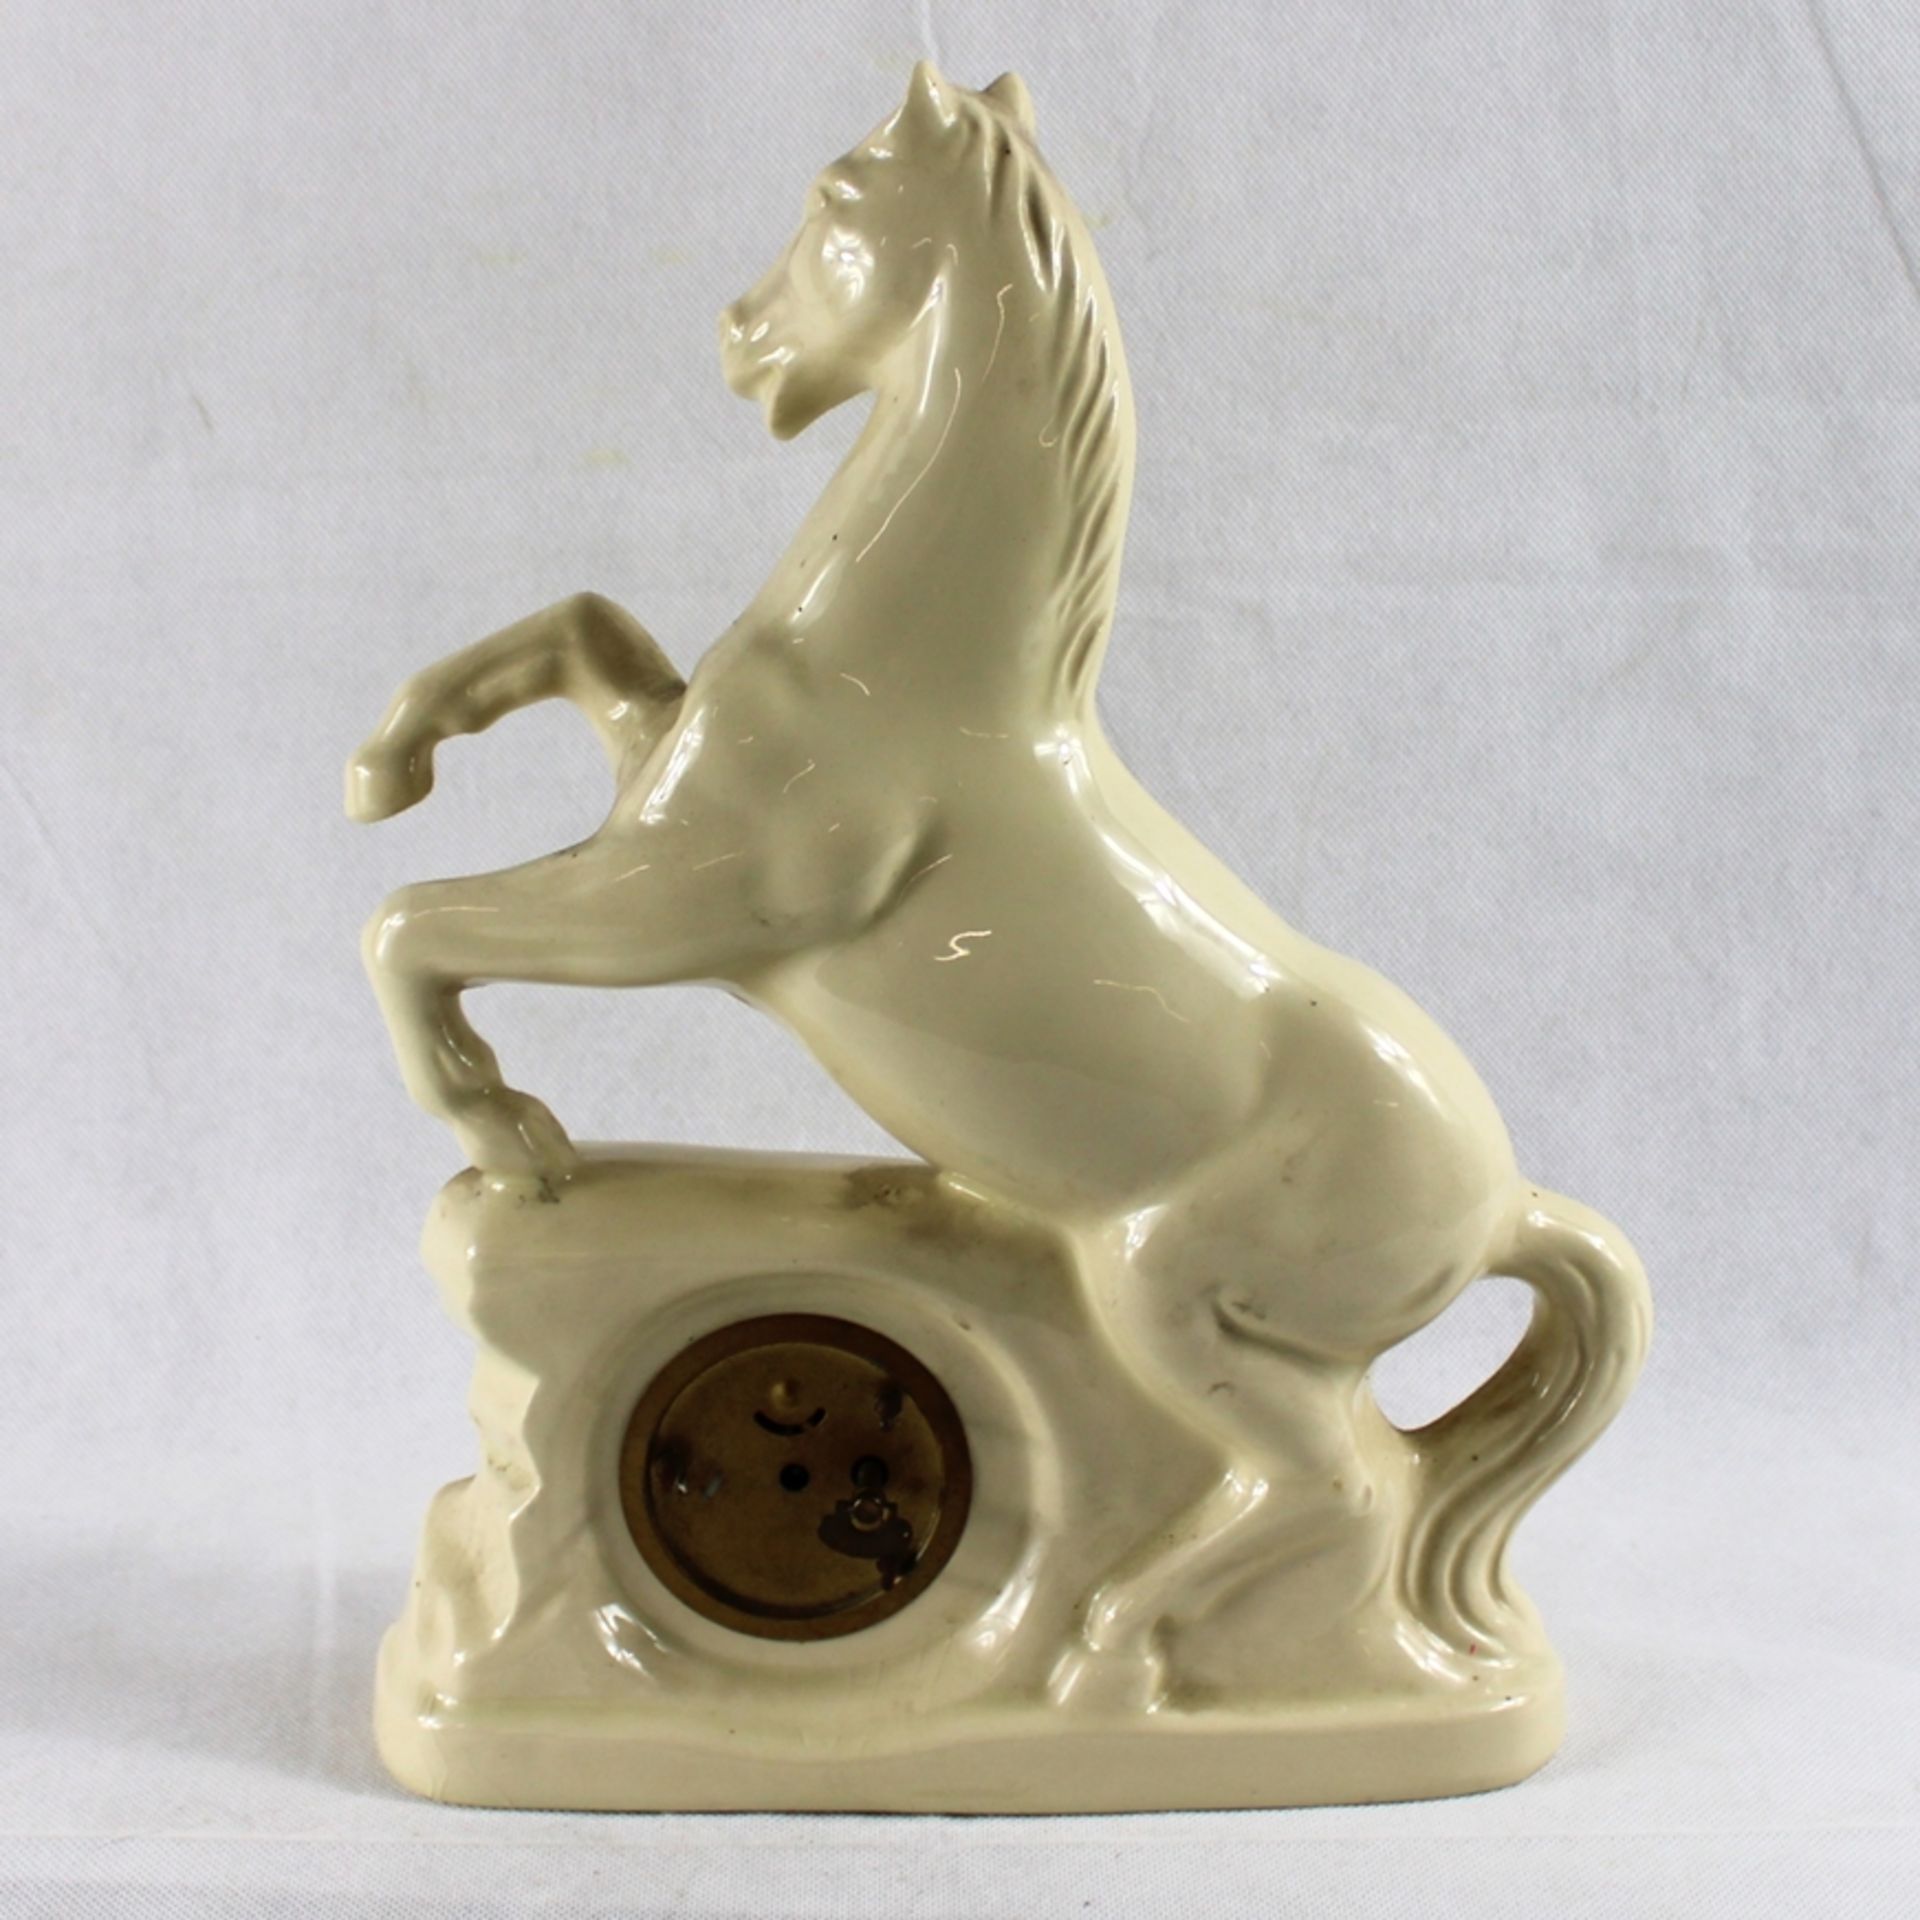 Pferd Porzellan Tischuhr ca. 24 x 33 cm, Uhr defekt - Image 2 of 2